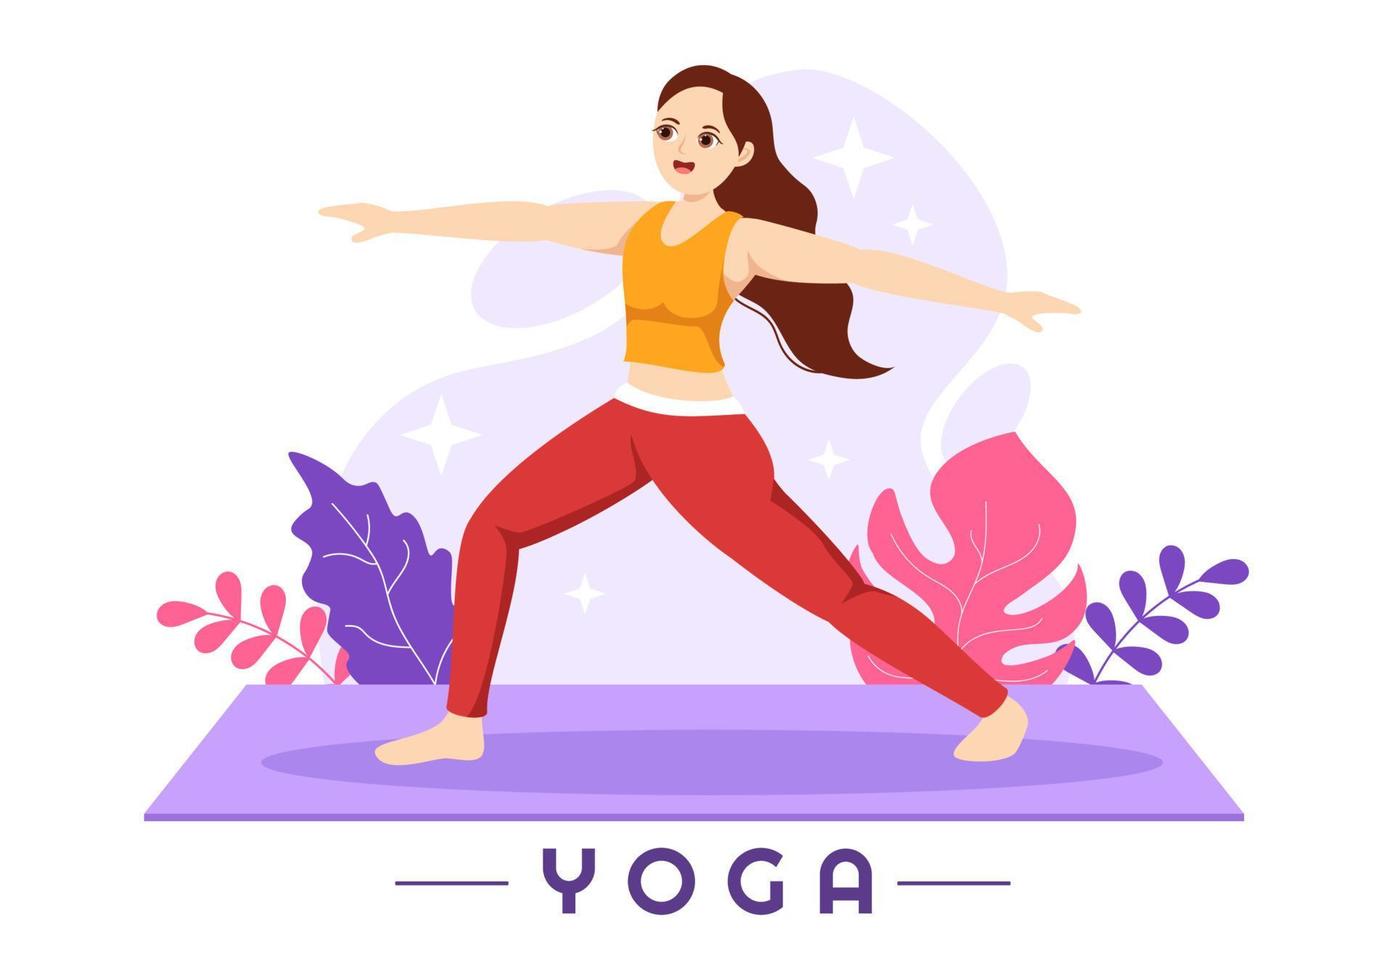 ilustración de prácticas de yoga y meditación con beneficios para la salud del cuerpo para banner web o página de inicio en plantillas planas dibujadas a mano de dibujos animados vector